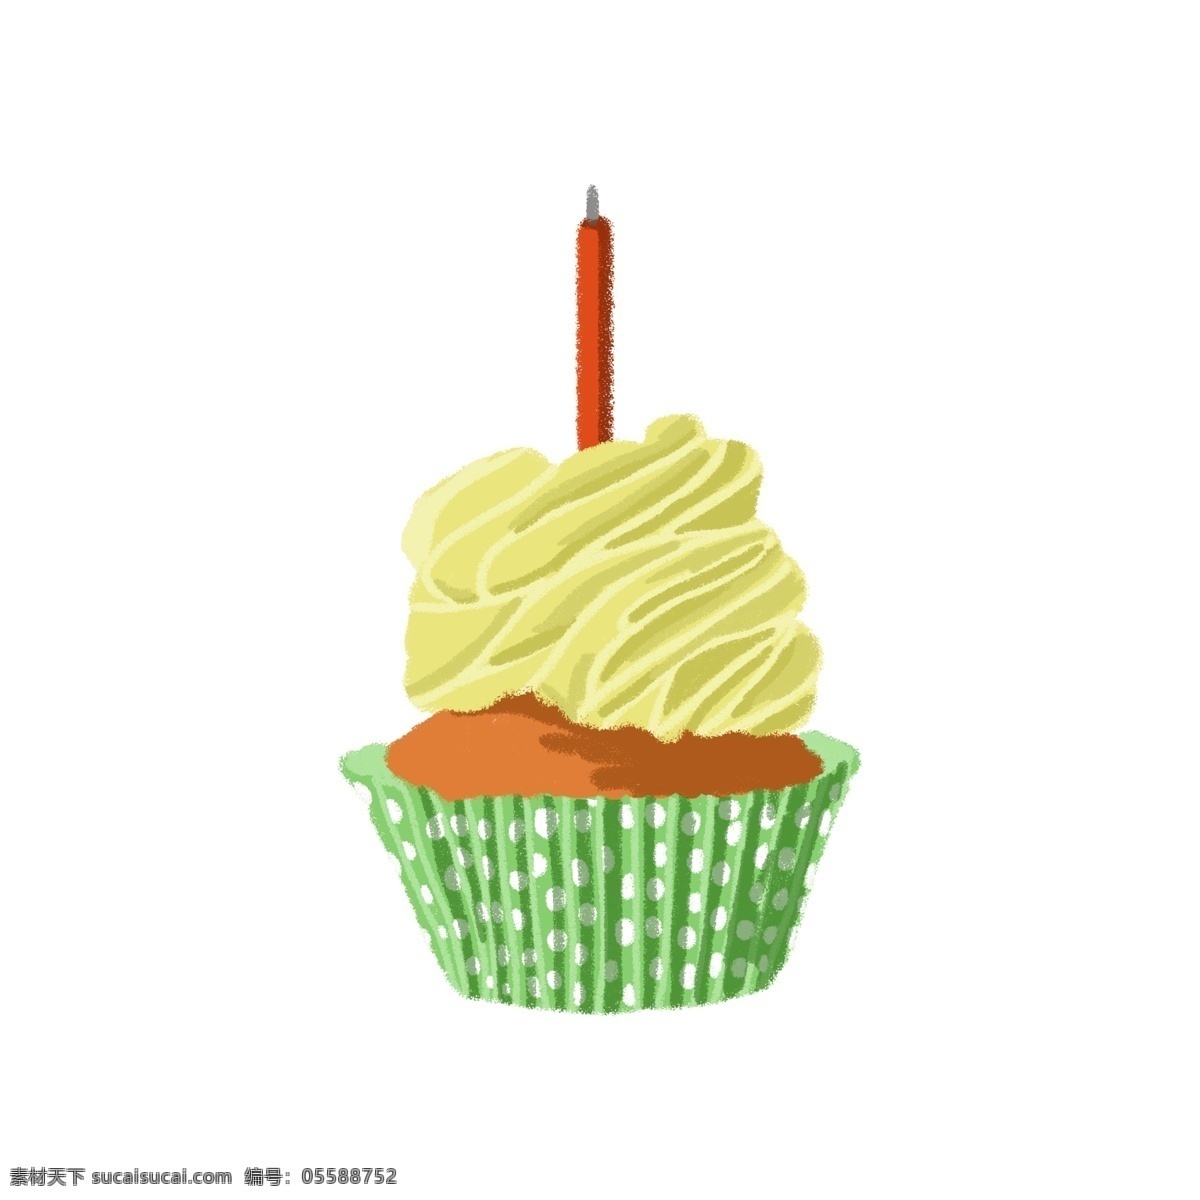 黄色 杯子 蛋糕 甜品 甜点 甜食 杯子蛋糕 奶油 鲜奶油 黄色奶油 绿色包装纸 波点 蜡烛 美味